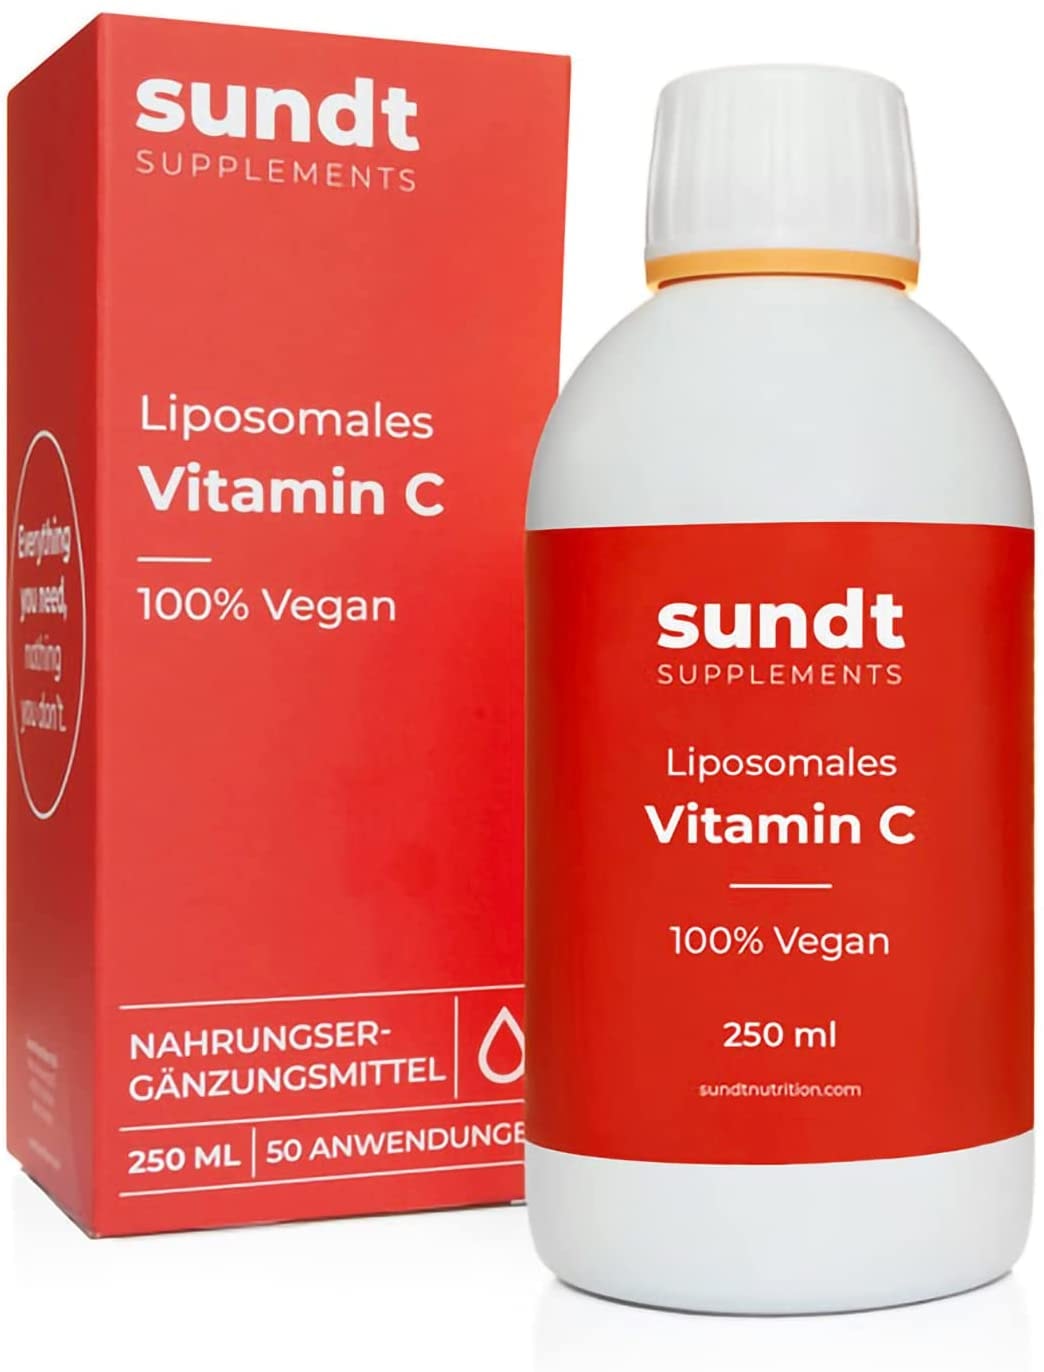 Sundt Nutrition Vitamin C Liposomal 250 ml flüssig | pro Dosis 1000 mg Vitamin C | hohe Bioverfügbarkeit | hochdosiert für ein starkes Immunsystem und guten Stoffwechsel | Vegan & GMO-frei |